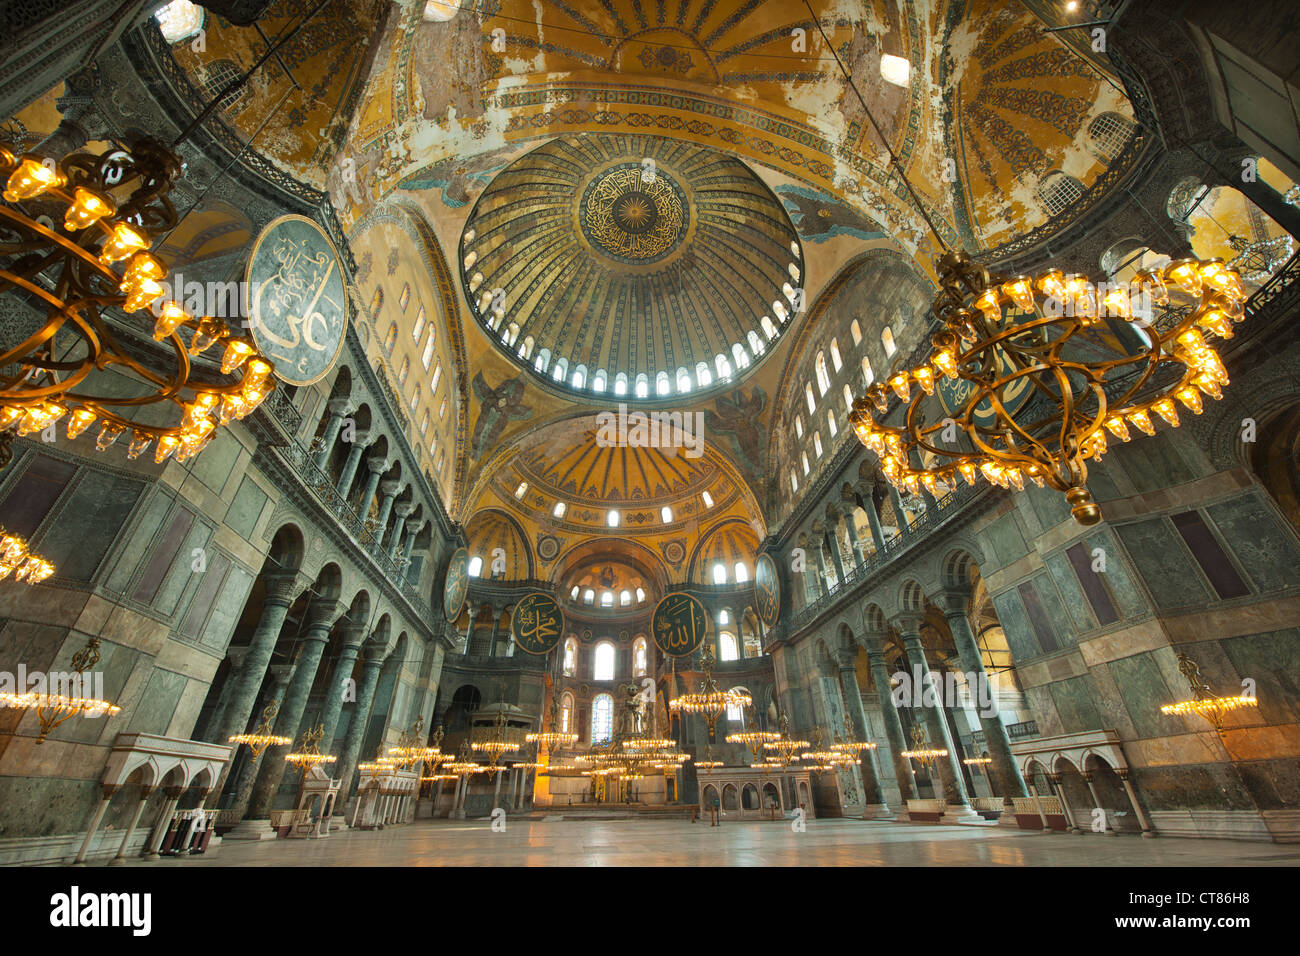 Turkiye, Istanbul, Sultanahmet, Hagia Sophia oder Sophienkirche, eine ehemalige Kirche, spätere Moschee und heute ein Museum. Foto Stock